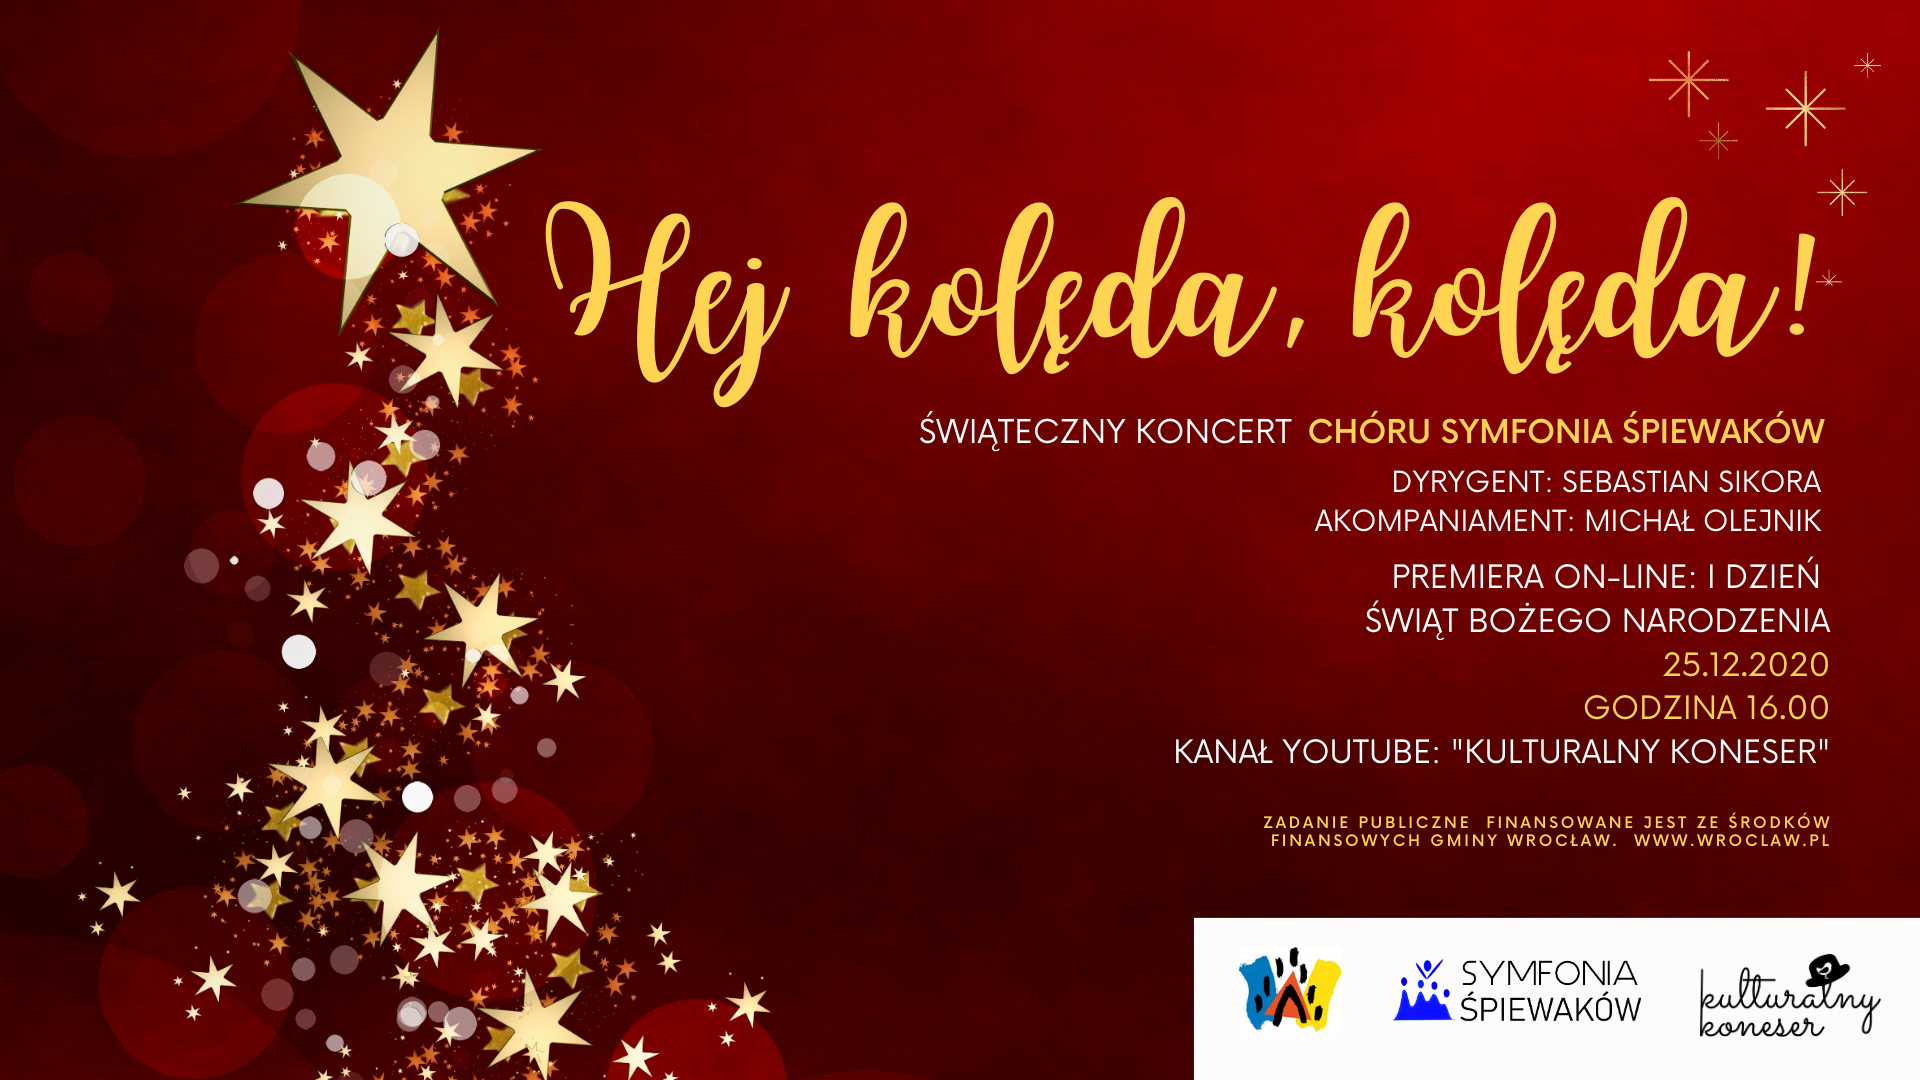 Świąteczny Koncert „Hej kolęda, kolęda!” – Symfonia Śpiewaków